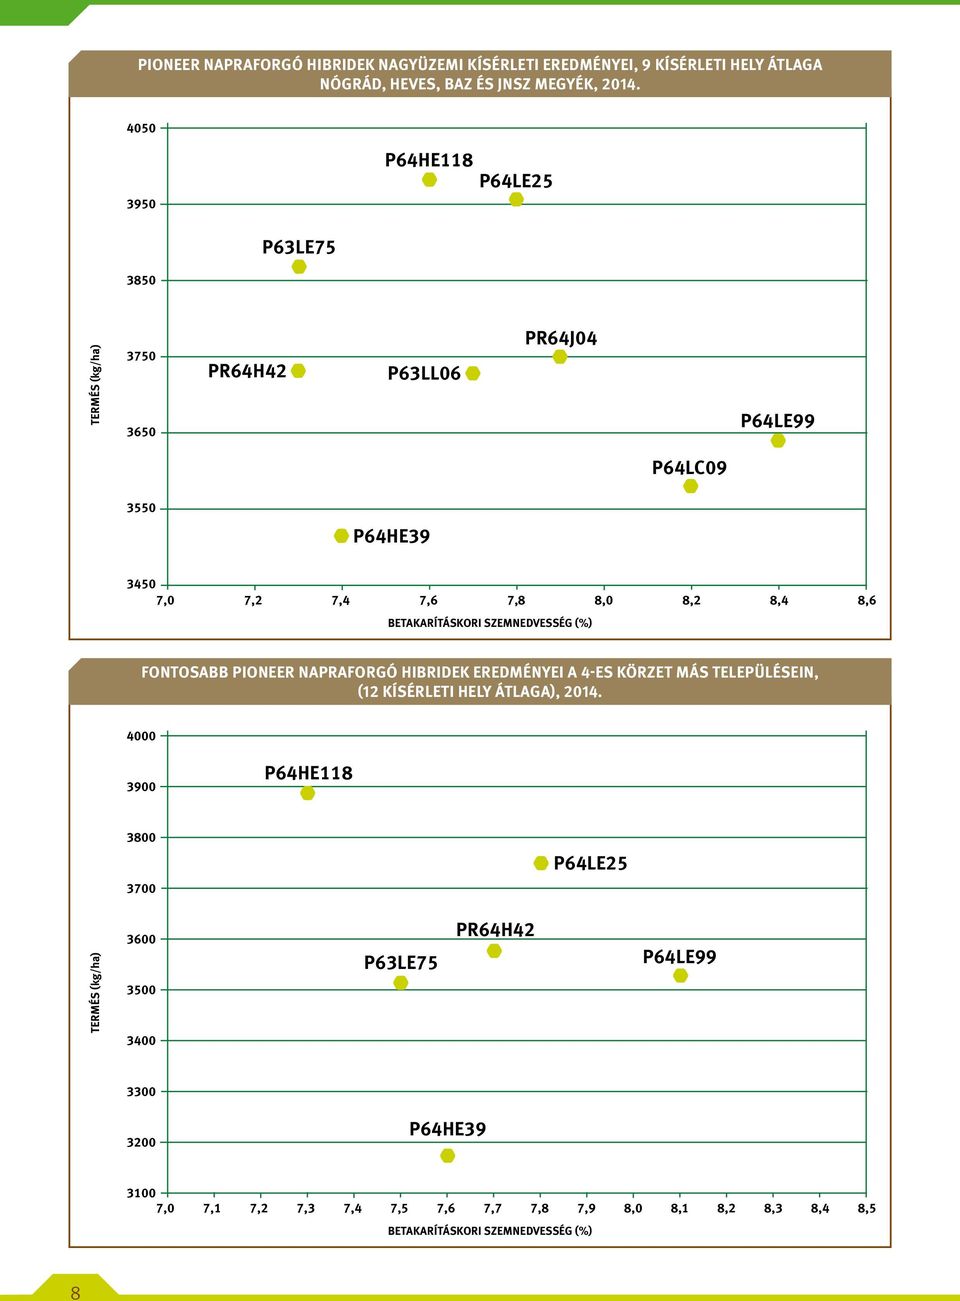 Betakarításkori szemnedvesség (%) Fontosabb PIONEER napraforgó hibridek eredményei a 4-es körzet más településein, (12 kísérleti hely átlaga), 2014.